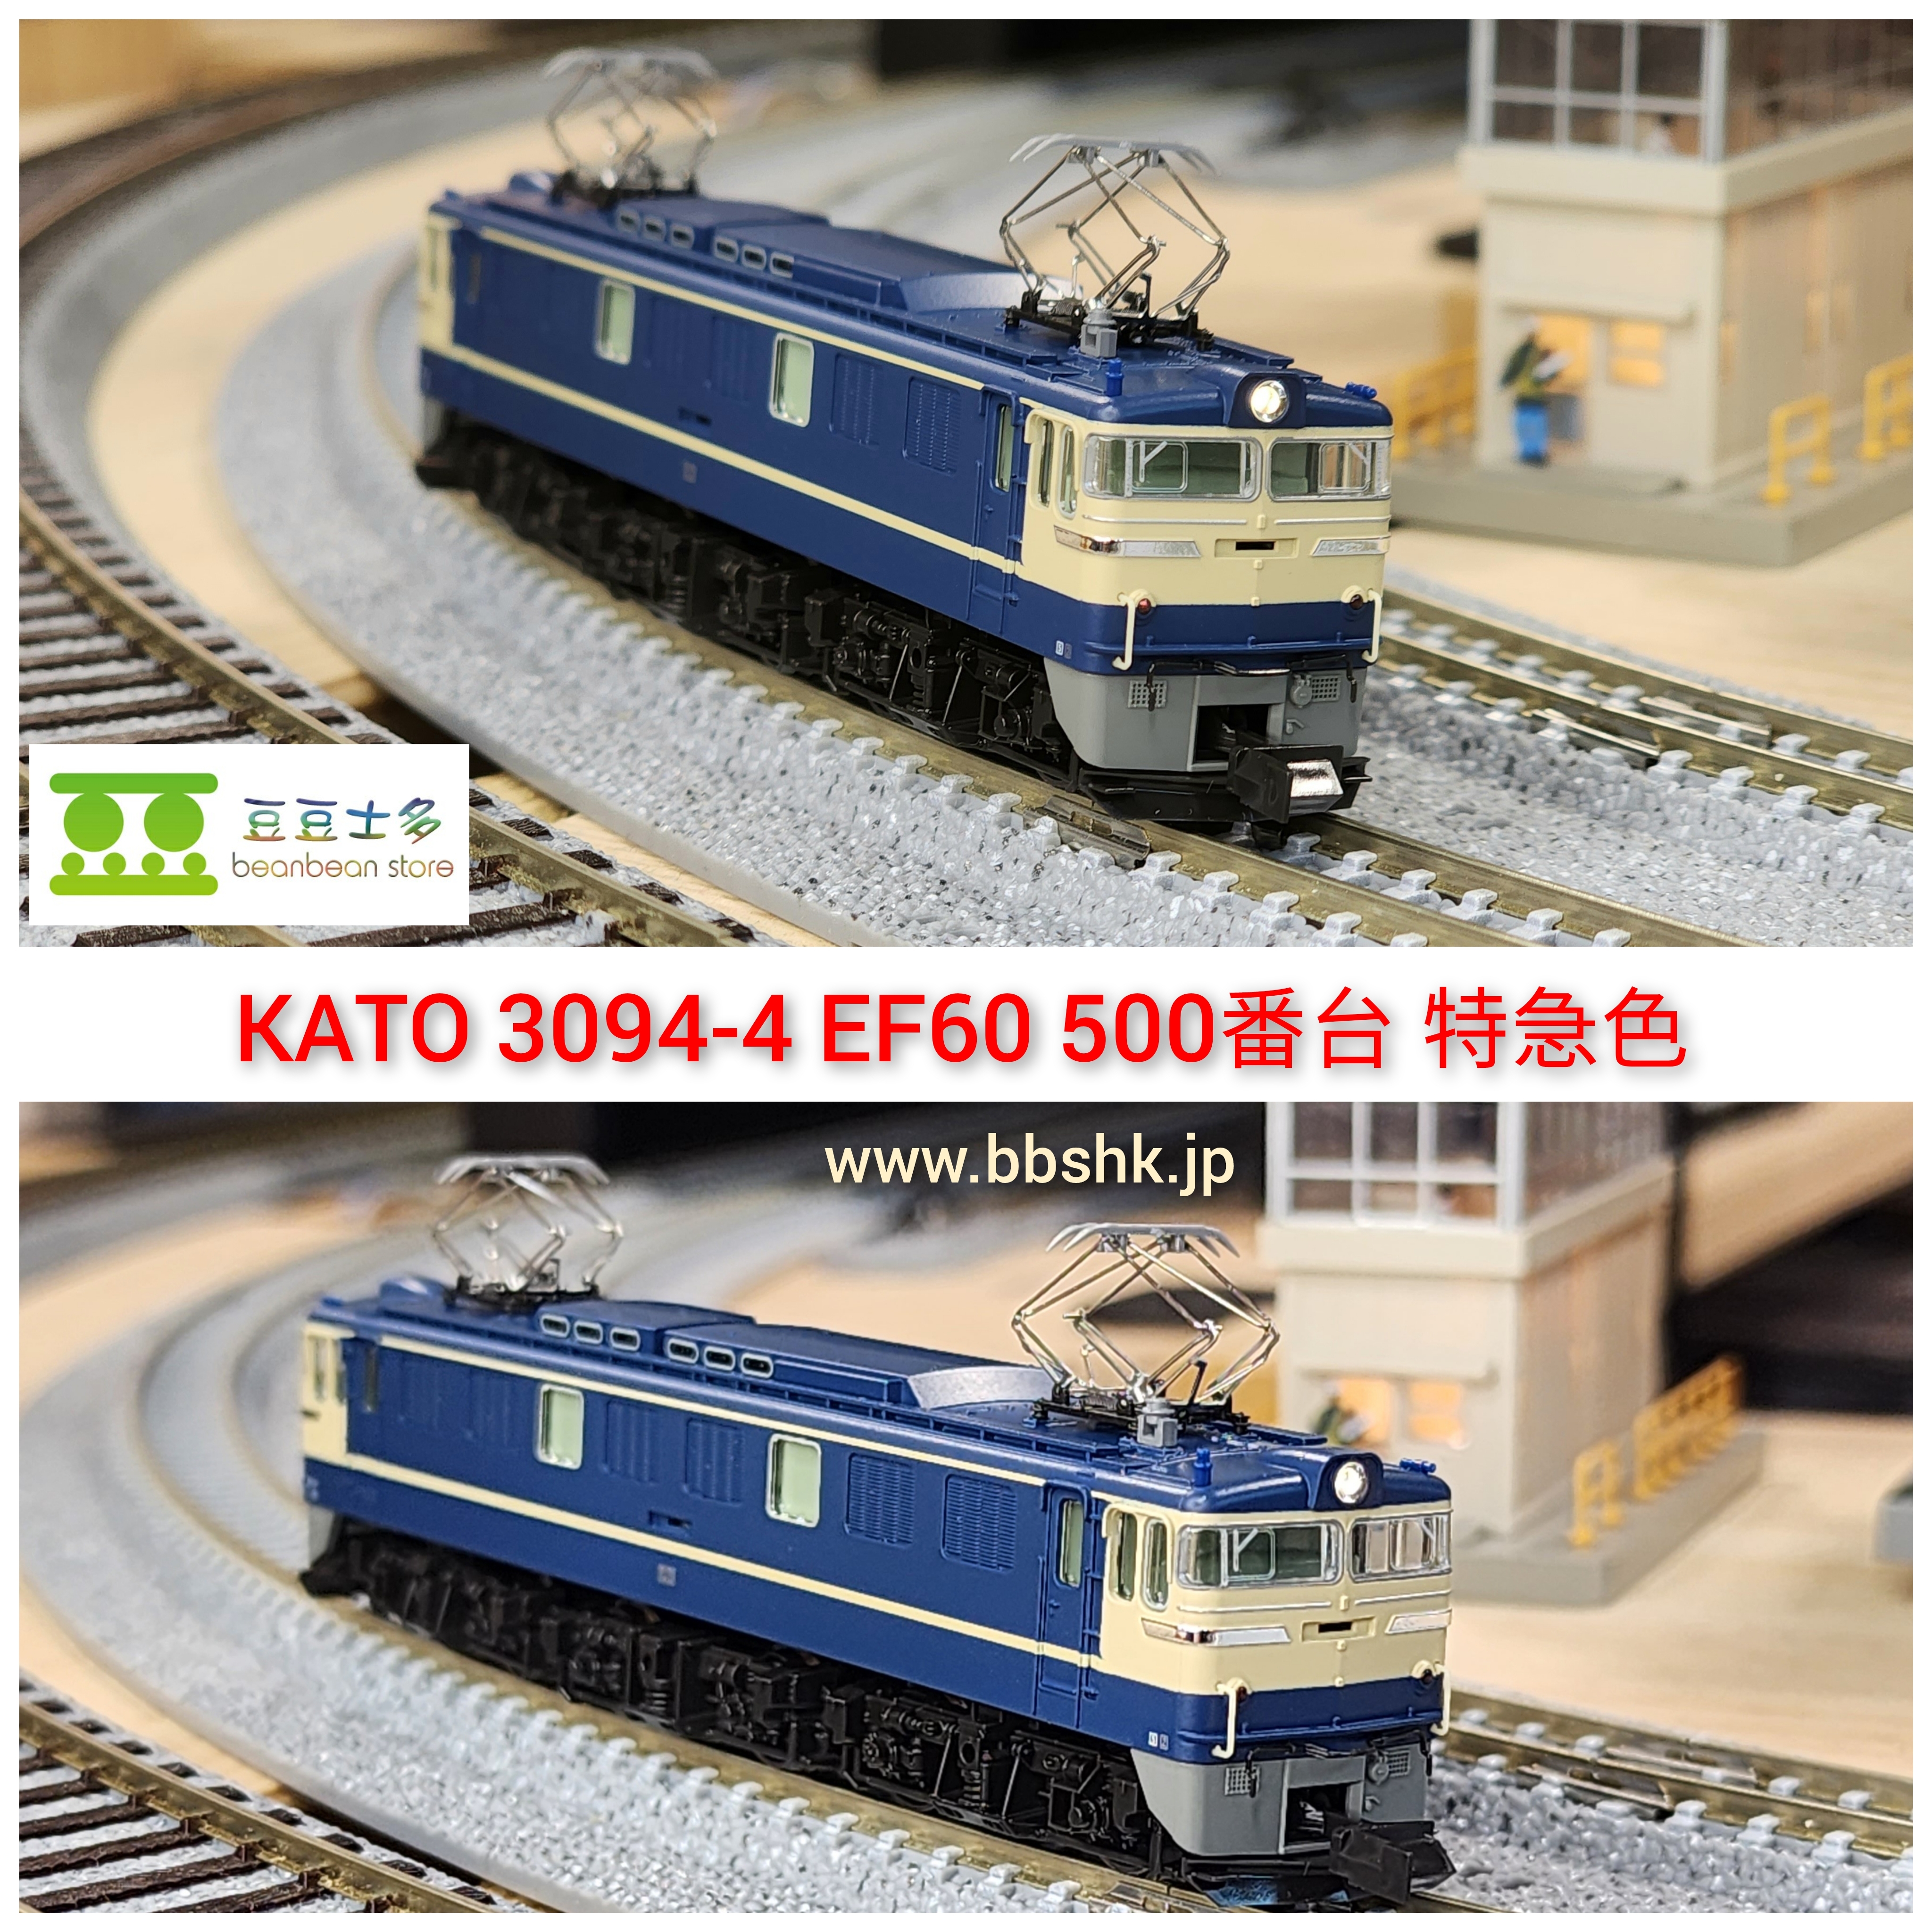 EF60 500 特急色 ウェザリング 細密化 KATO 3025 EF60 504号機 ブルー 